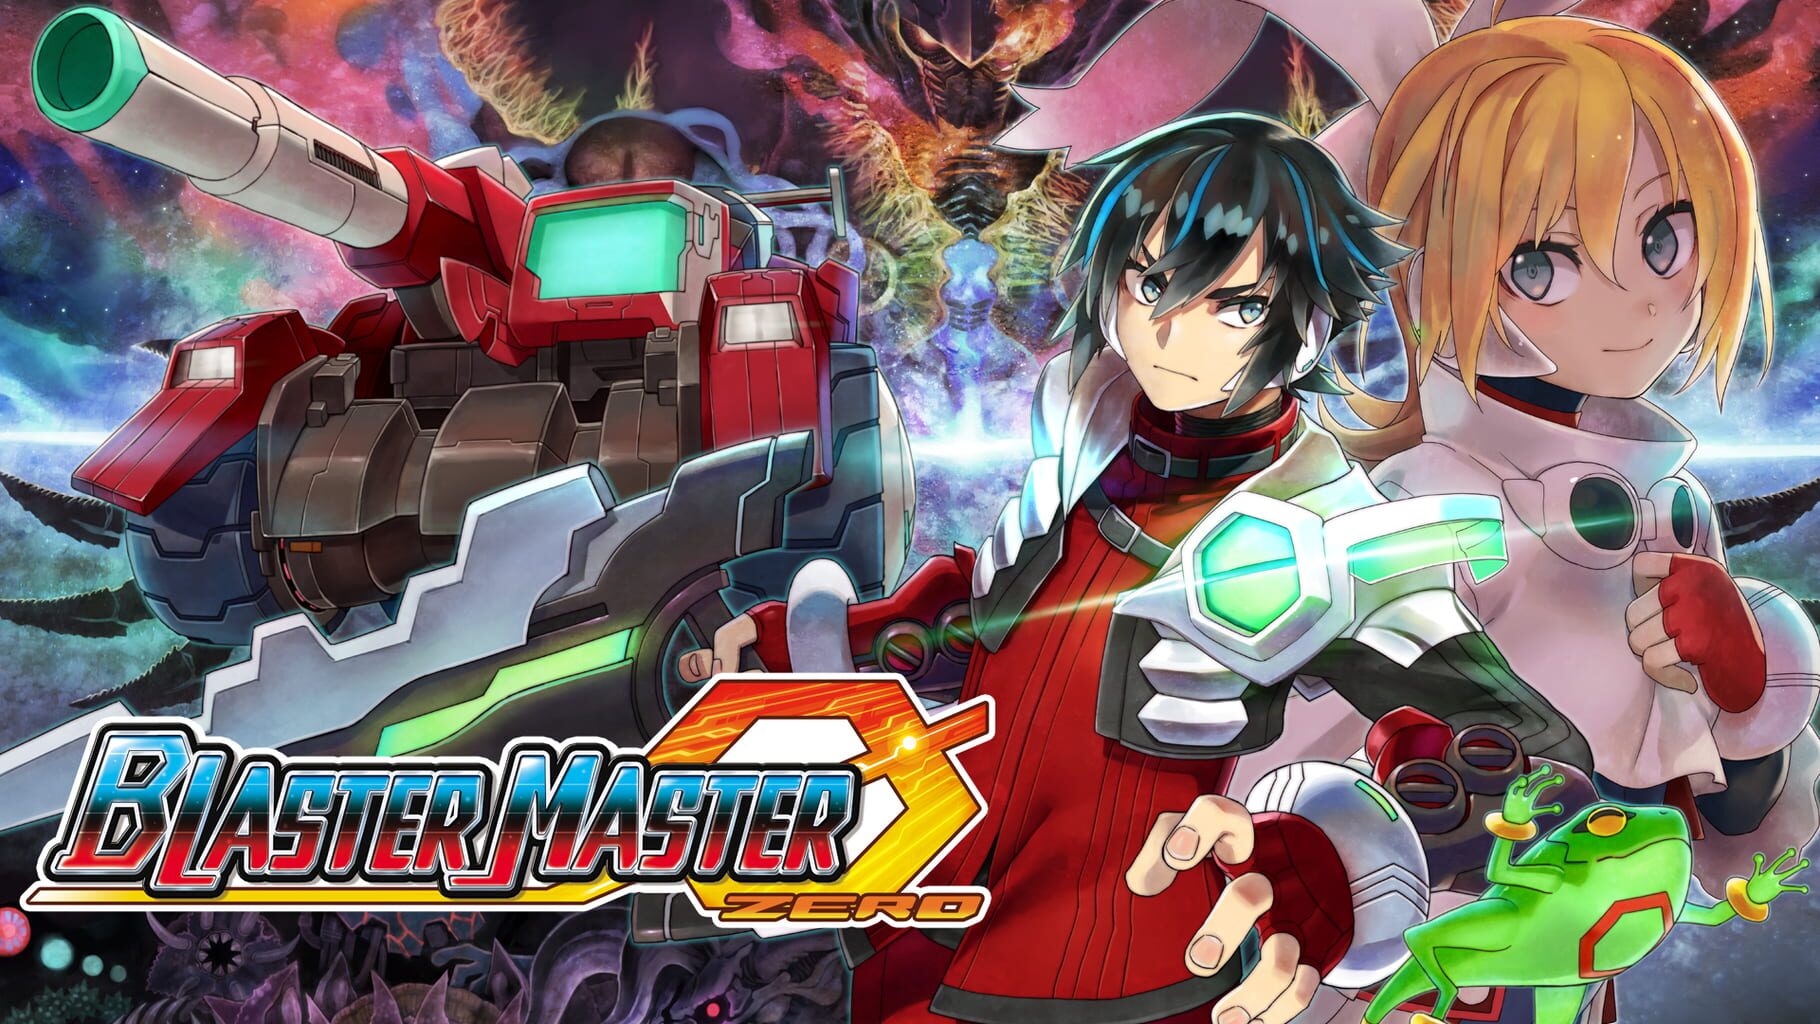 Artwork for Blaster Master Zero